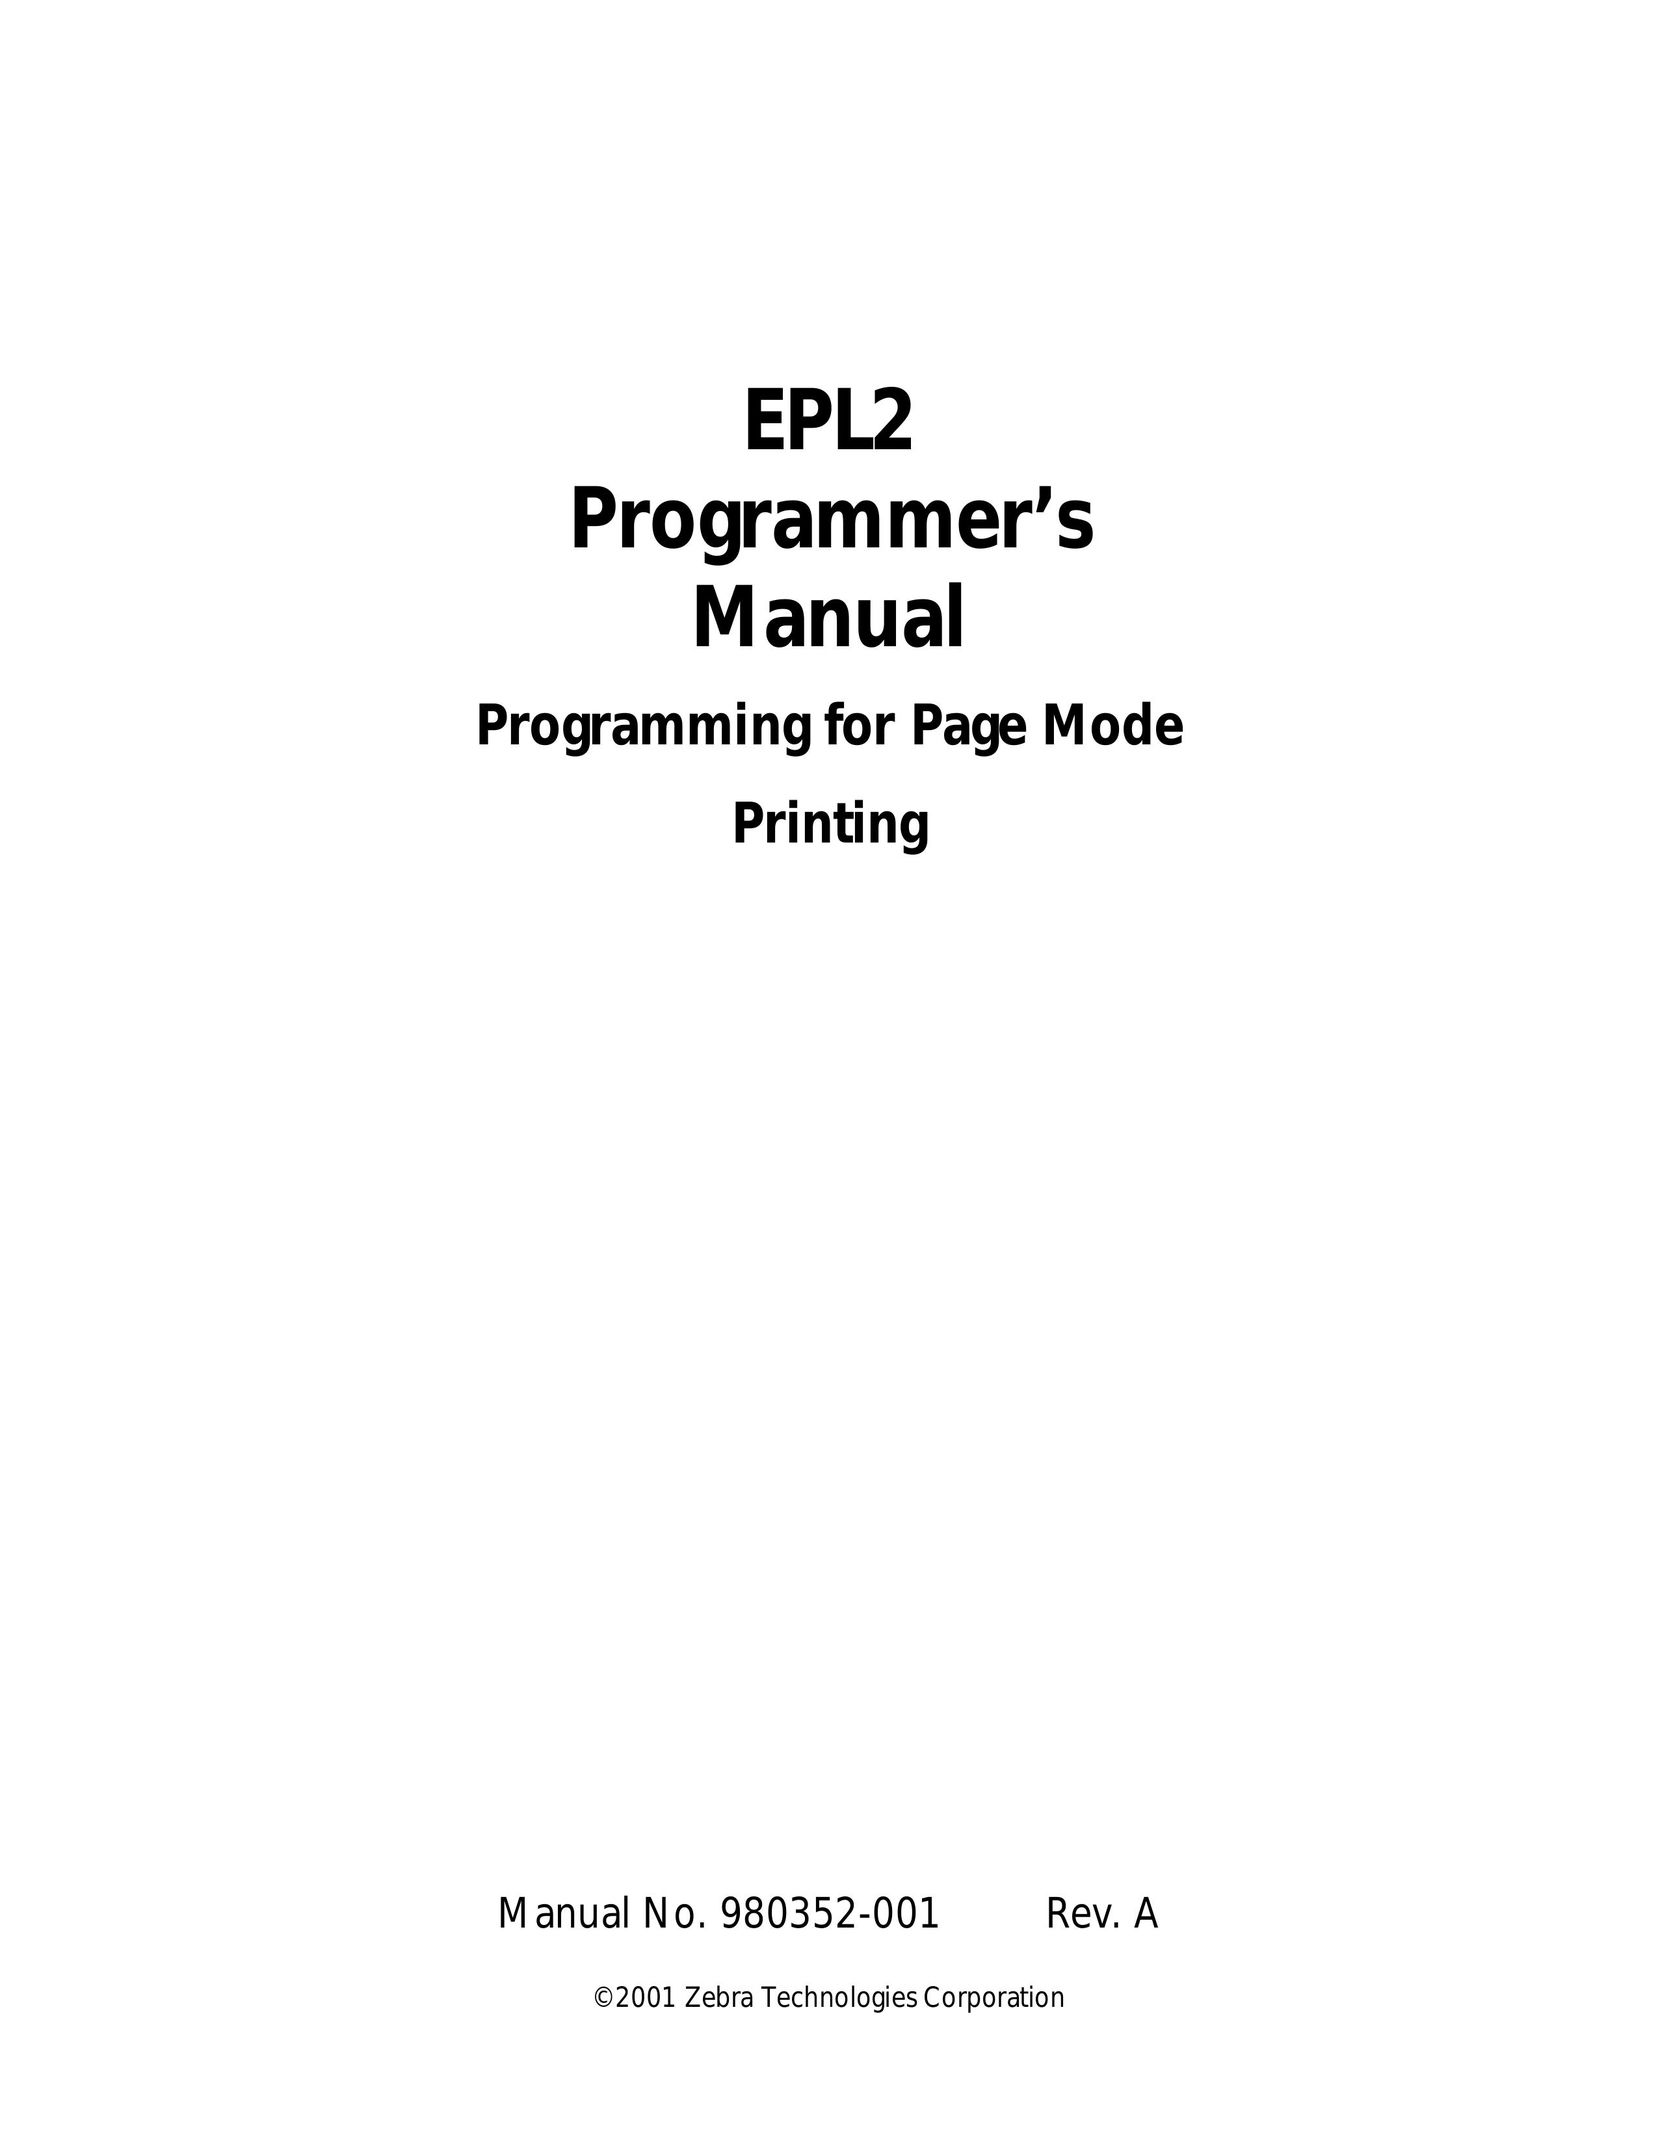 Zebra Technologies EPL2 Printer User Manual